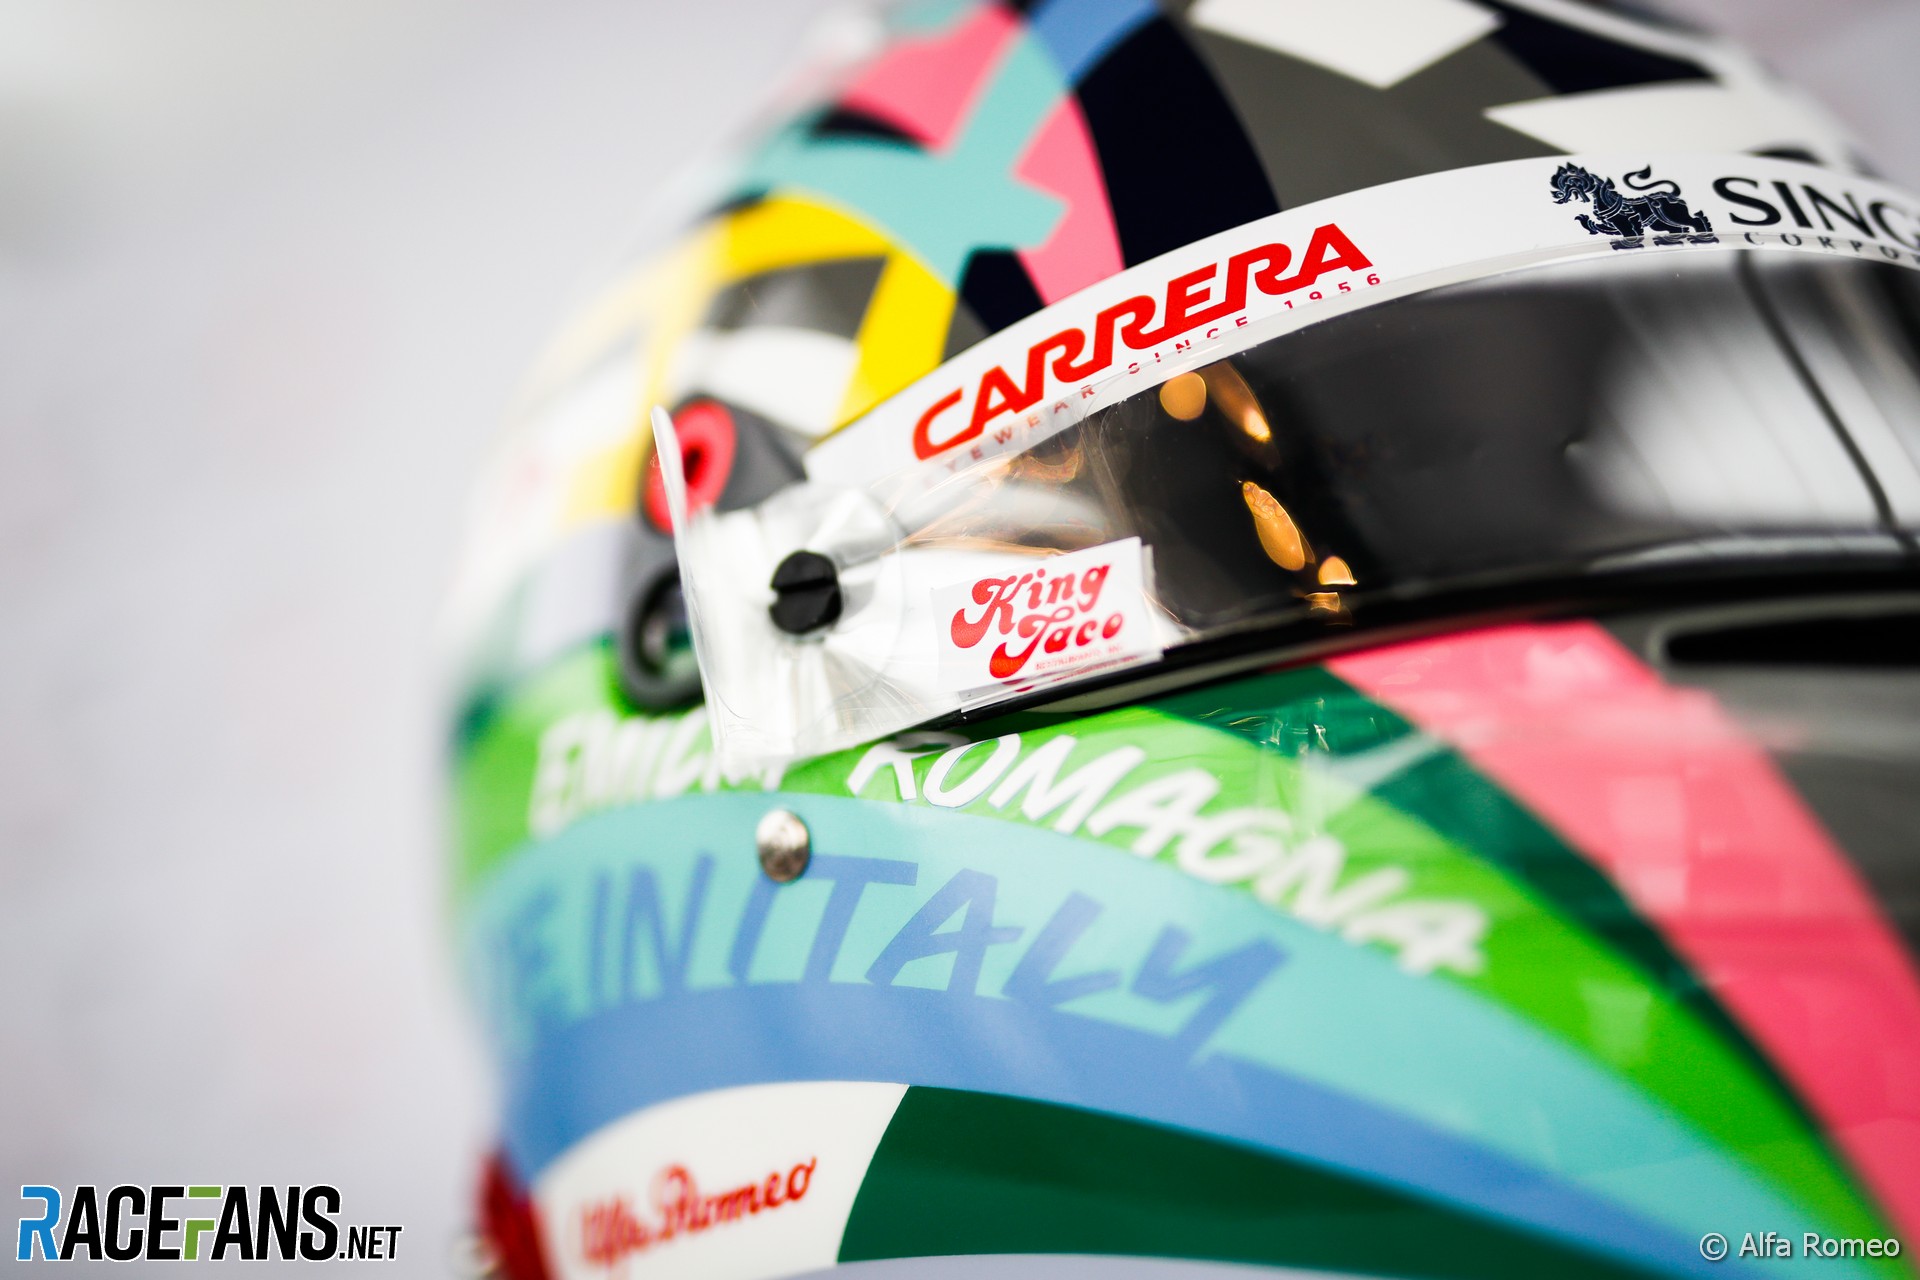 Antonio Giovinazzi's 2021 Emilia-Romagna Grand Prix helmet